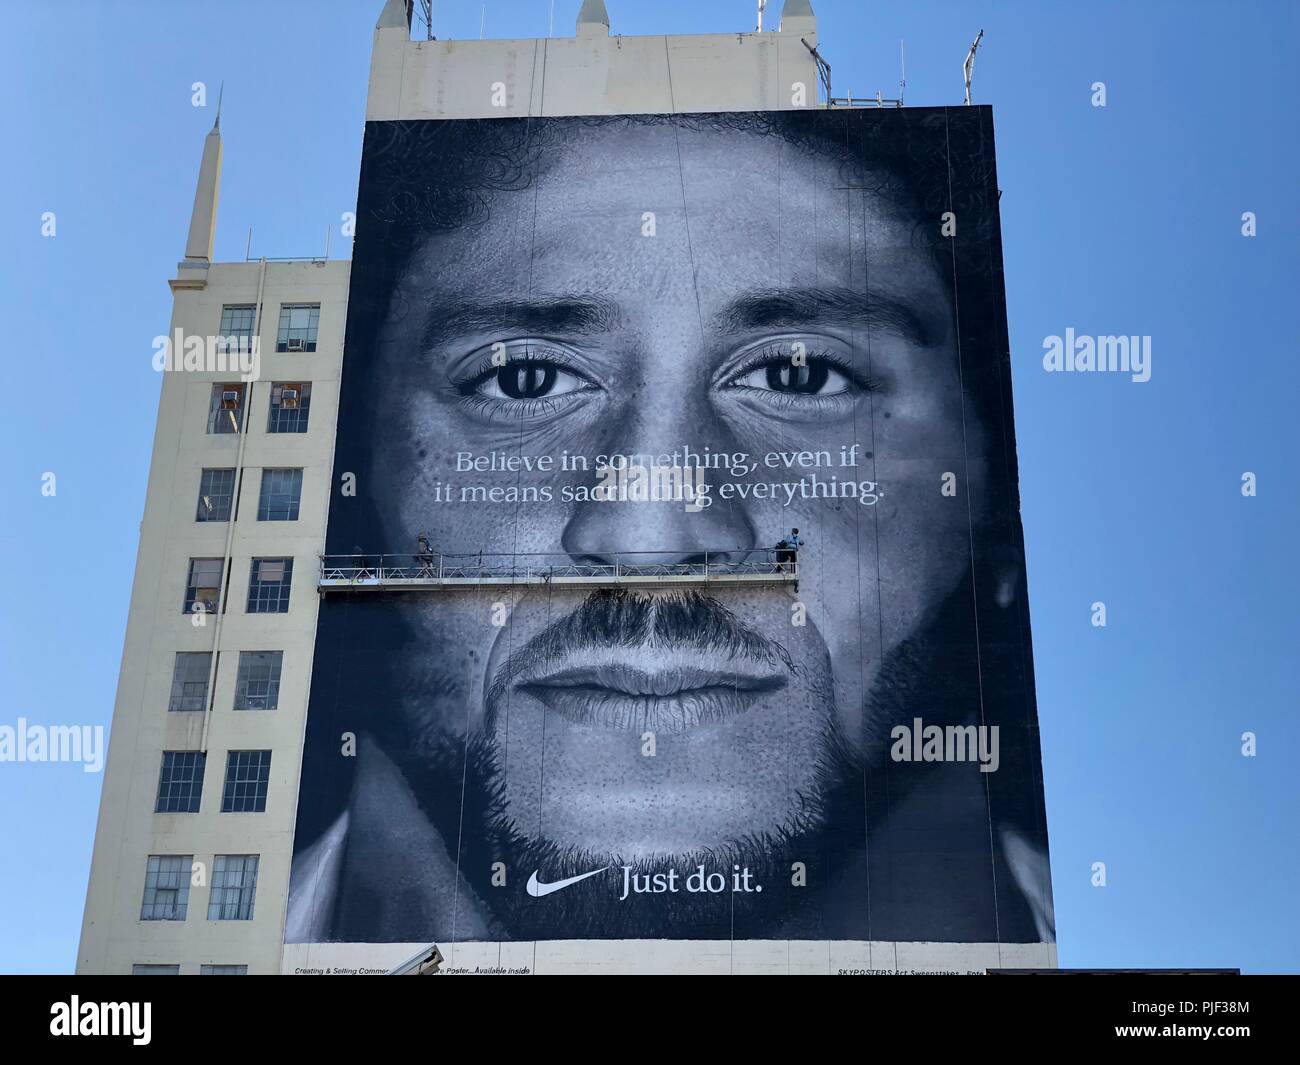 Los Angeles, USA. 06 Sep, 2018. Allgemeine Ansicht von Nike ad mit ehemaligen San Francisco 49ers quarterback Colin Kaepernick zum 30. Jahrestag der "zum Gedenken Just Do It"-Kampagne an der Seite